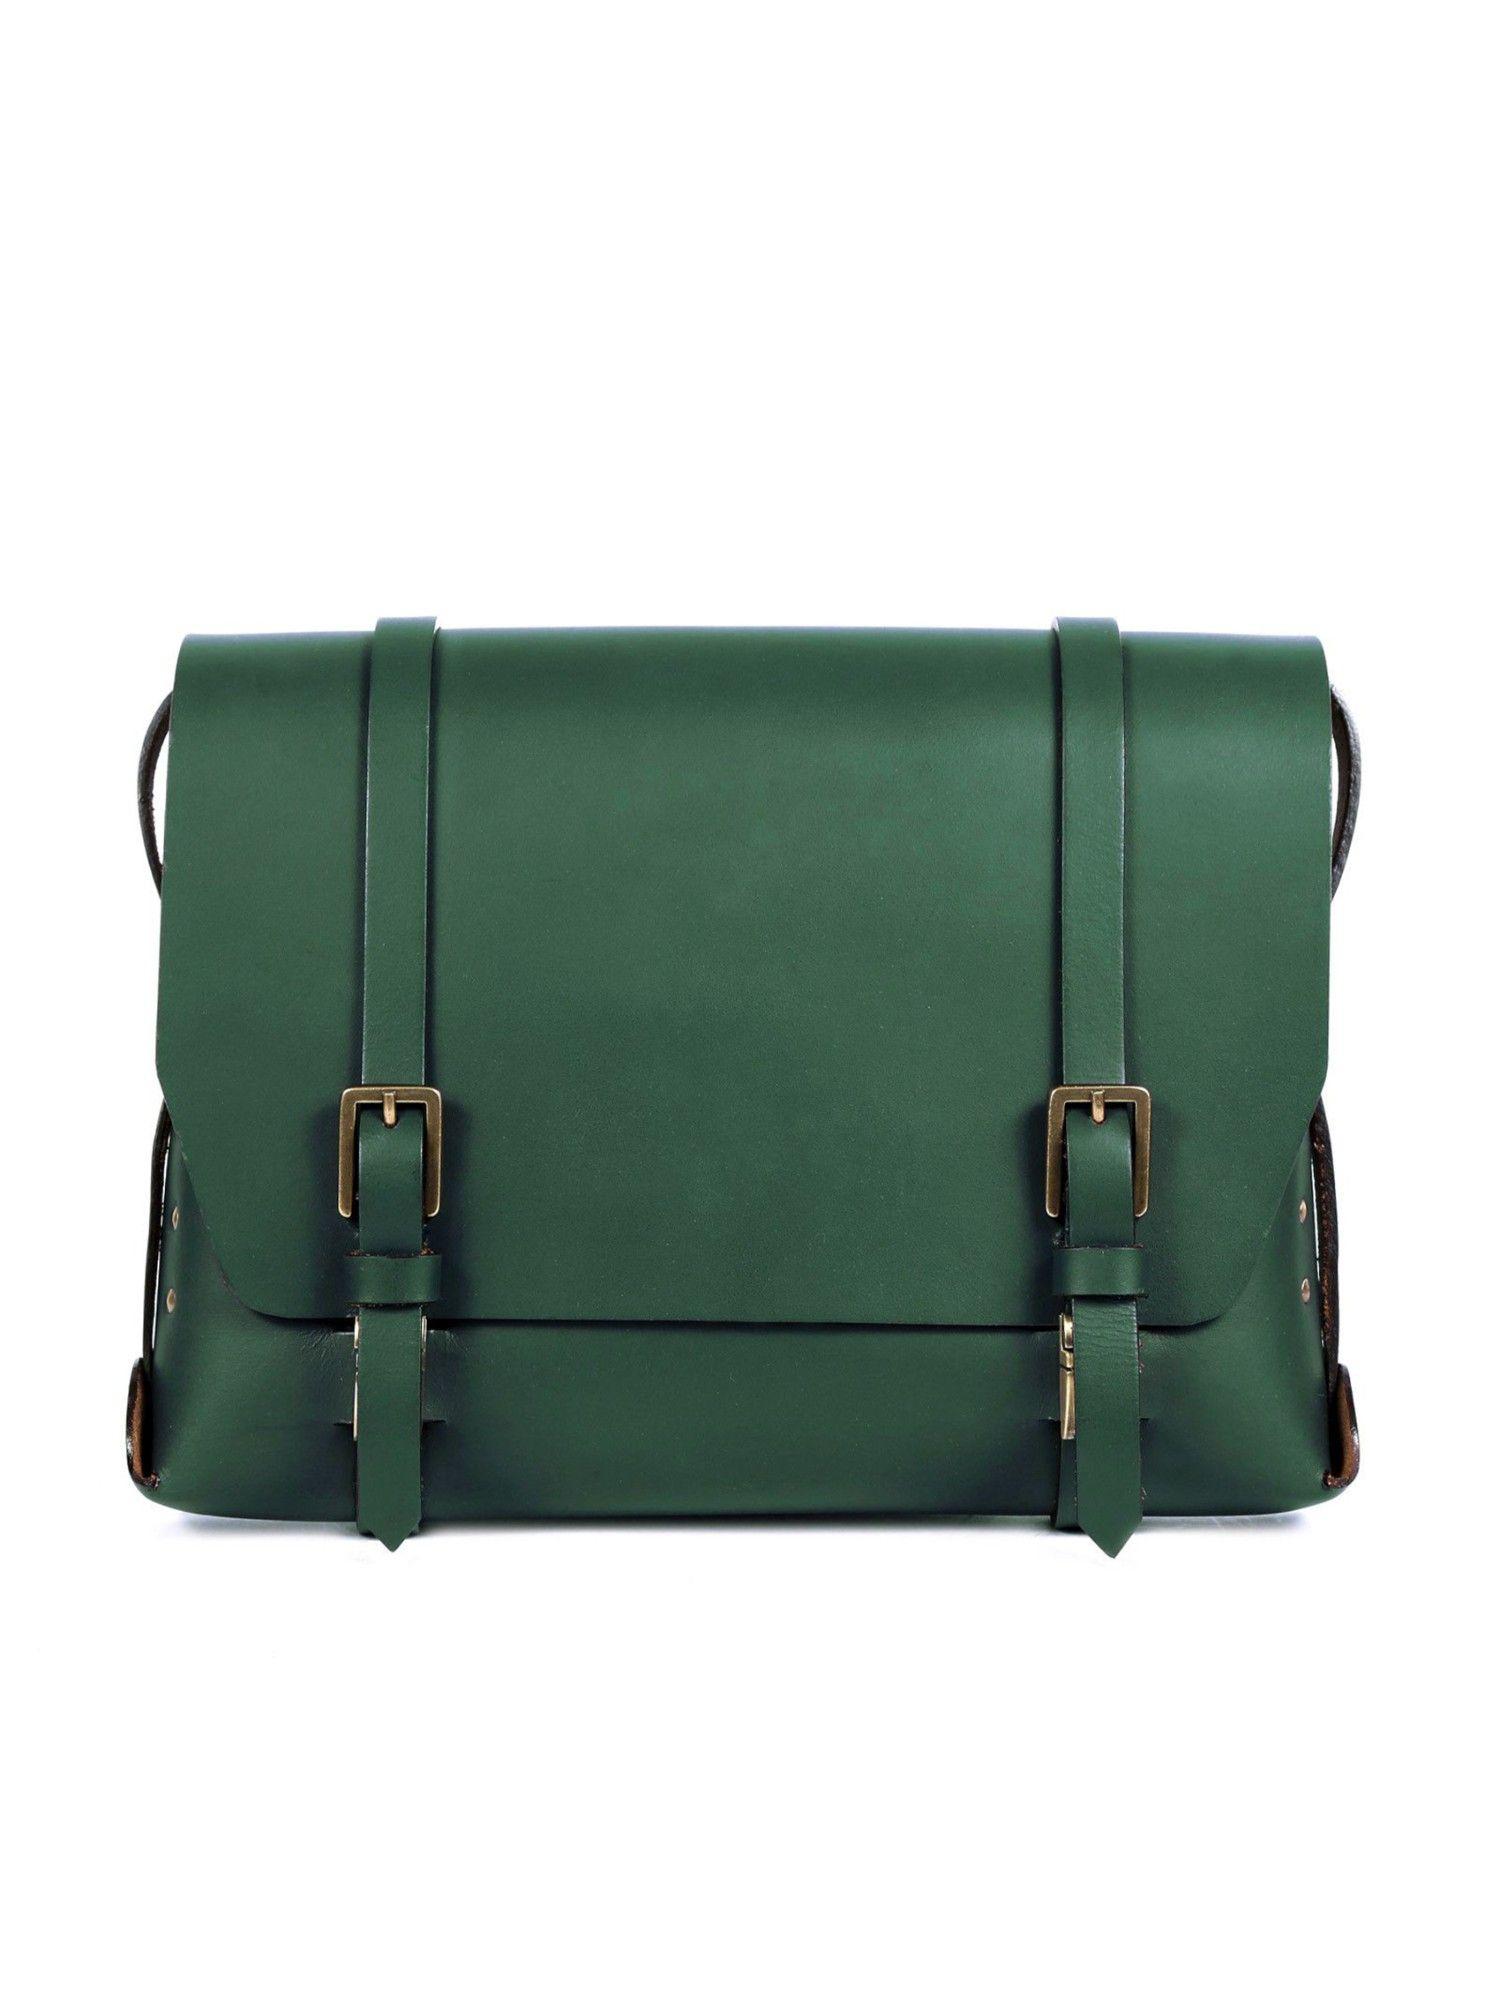 green grenadier ii satchel